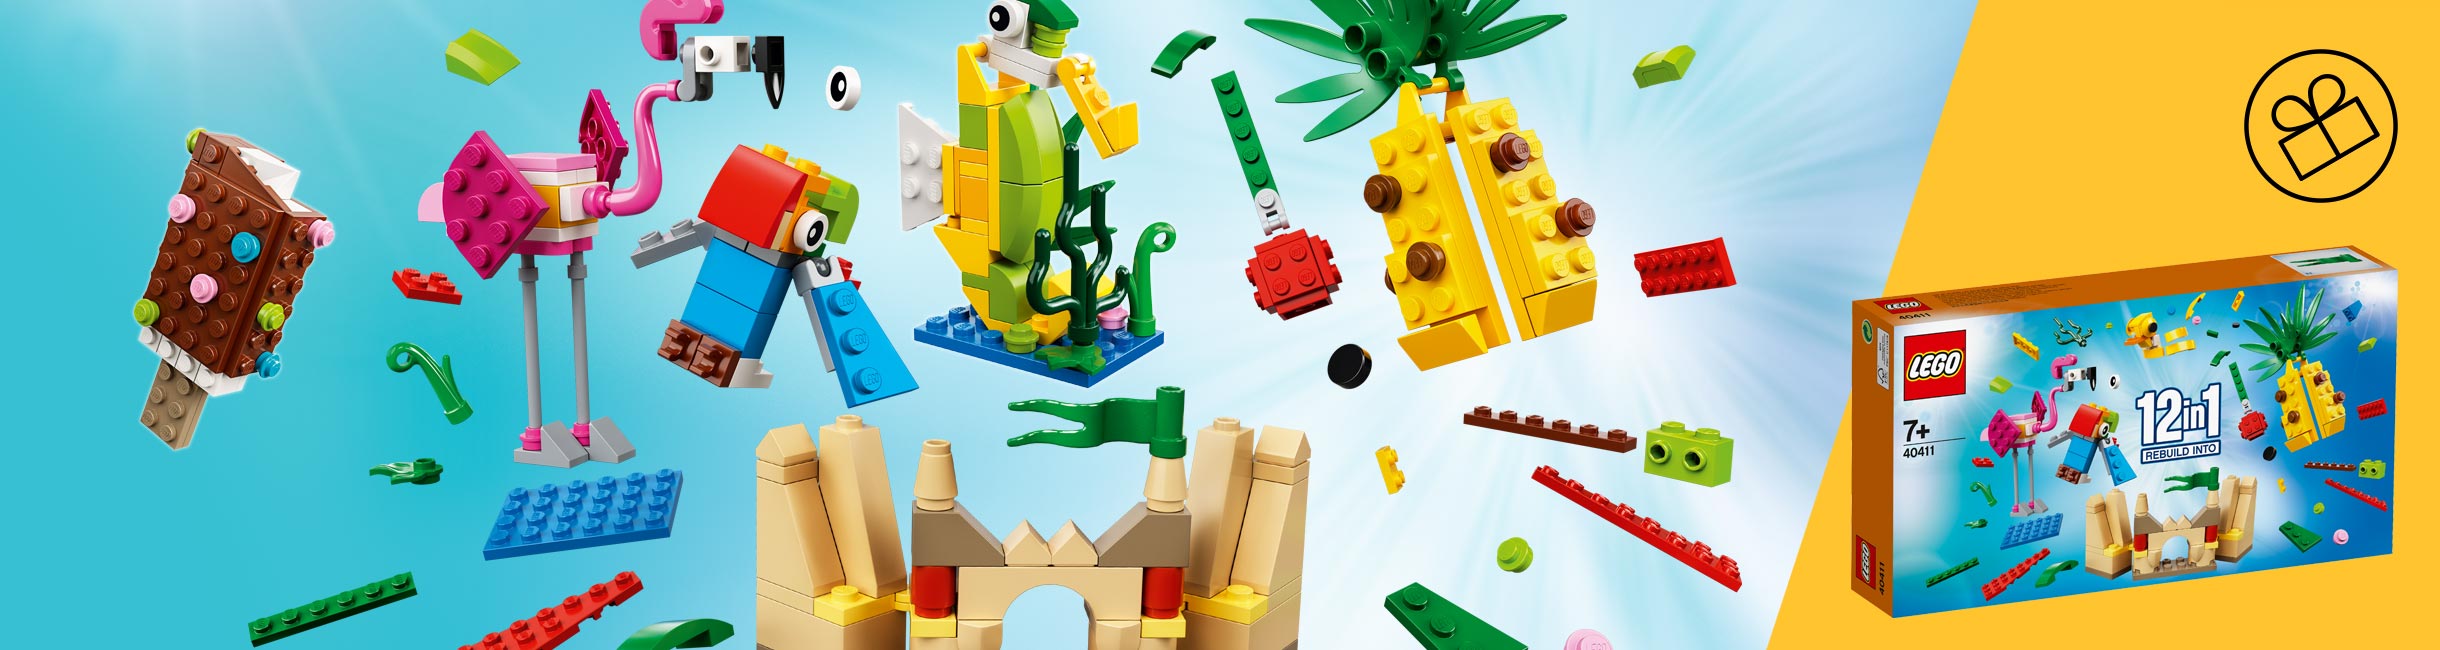 Рекламная акция Лего (LEGO) «12 идей для сочного лета!»